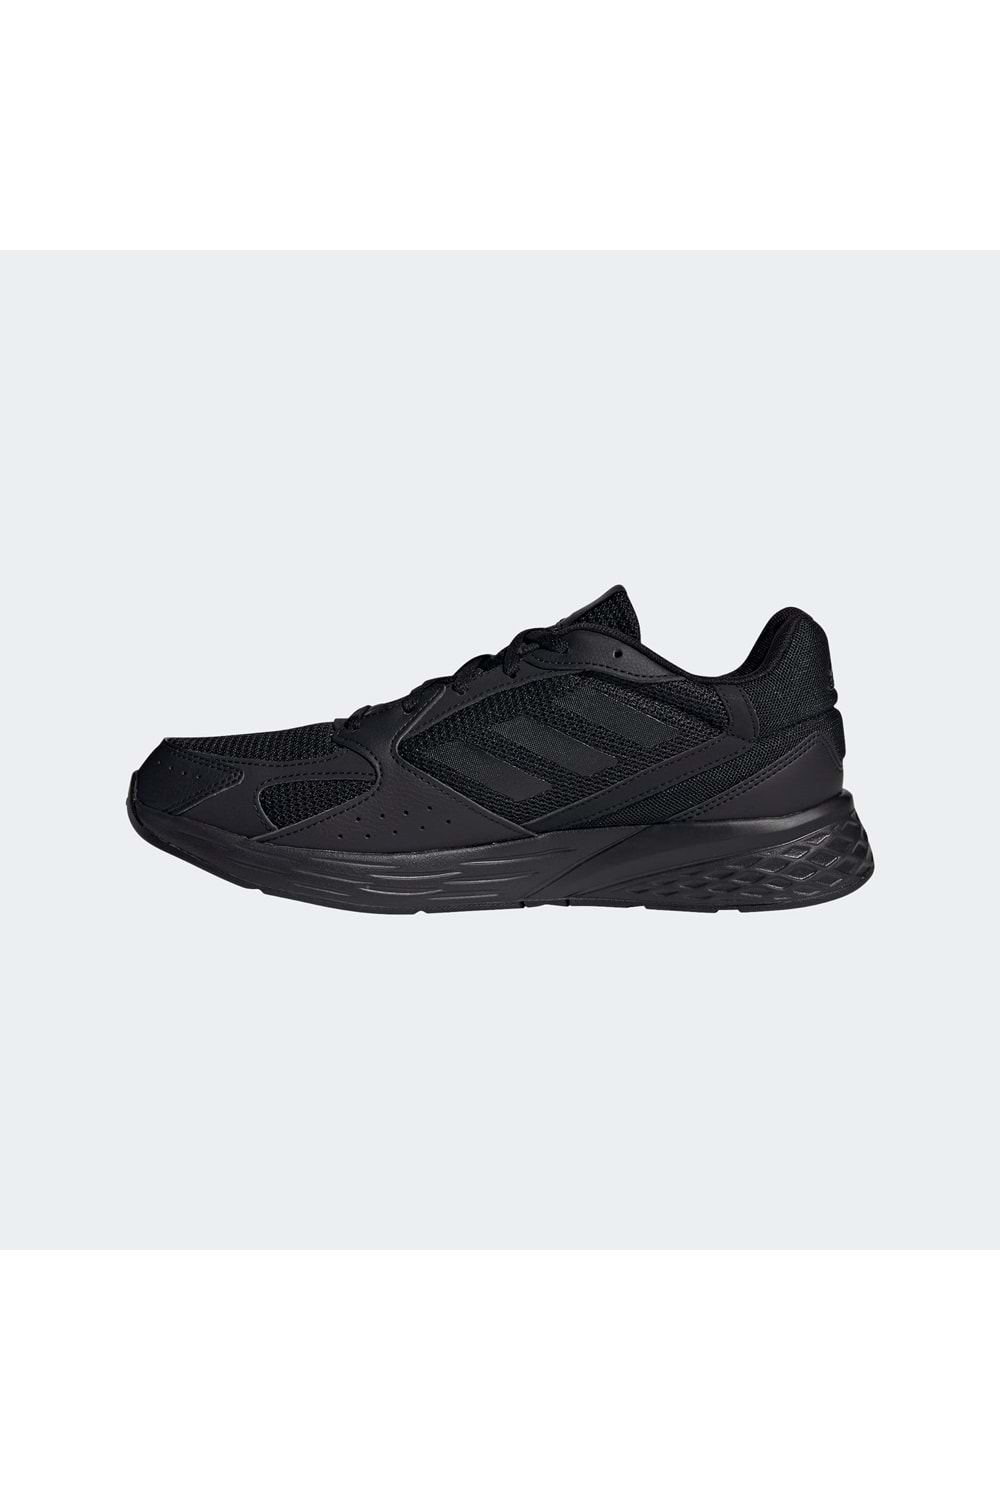 Adidas Response Run Erkek Siyah Koşu&Yürüyüş Spor Ayakkabı FY9576